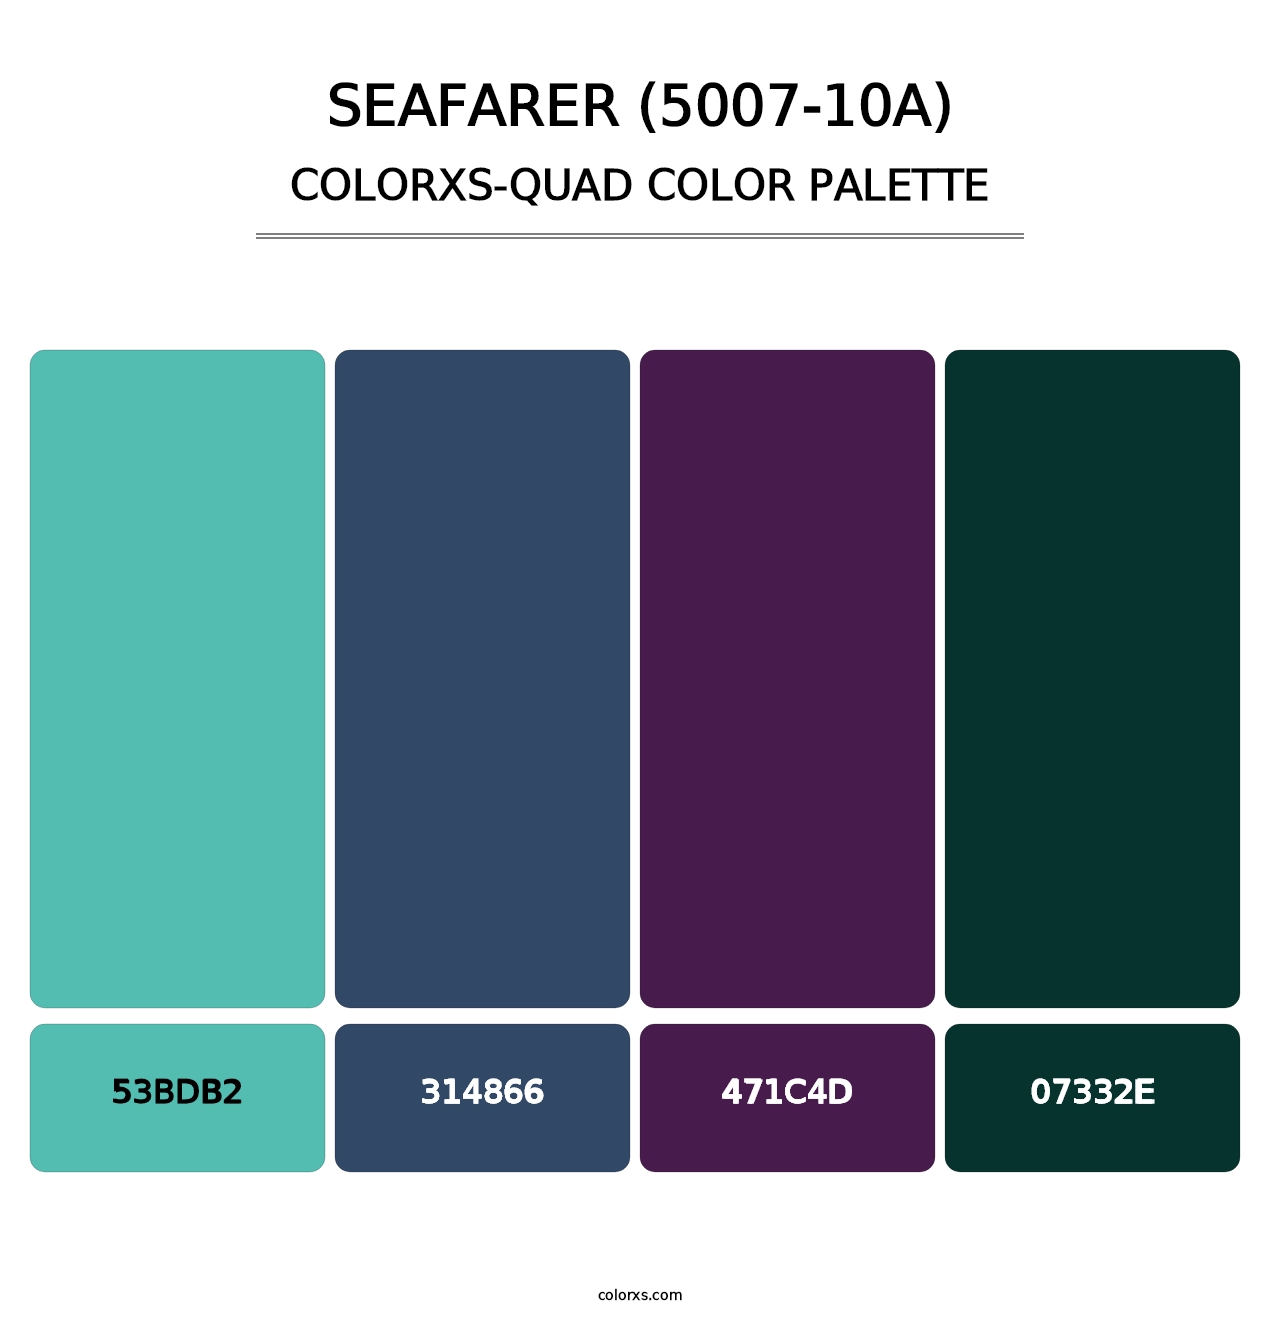 Seafarer (5007-10A) - Colorxs Quad Palette